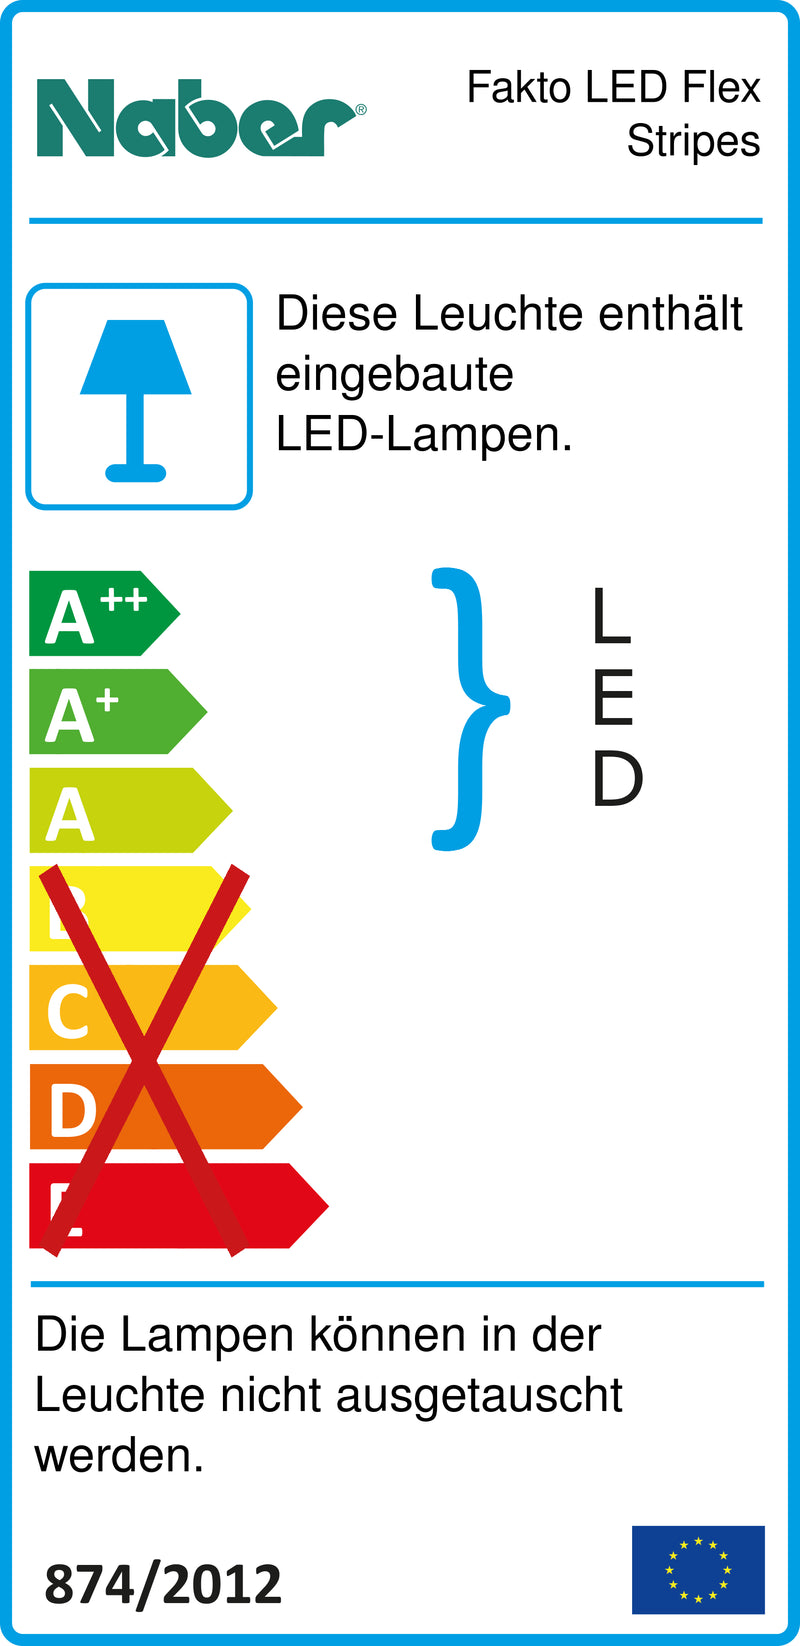 E-Label zu Zeichnung zu Fakto LED Flex Stripes als Variante L 600 mm, 3,0 W von Naber GmbH in der Kategorie Lichttechnik in Österreich auf conceptshop.at